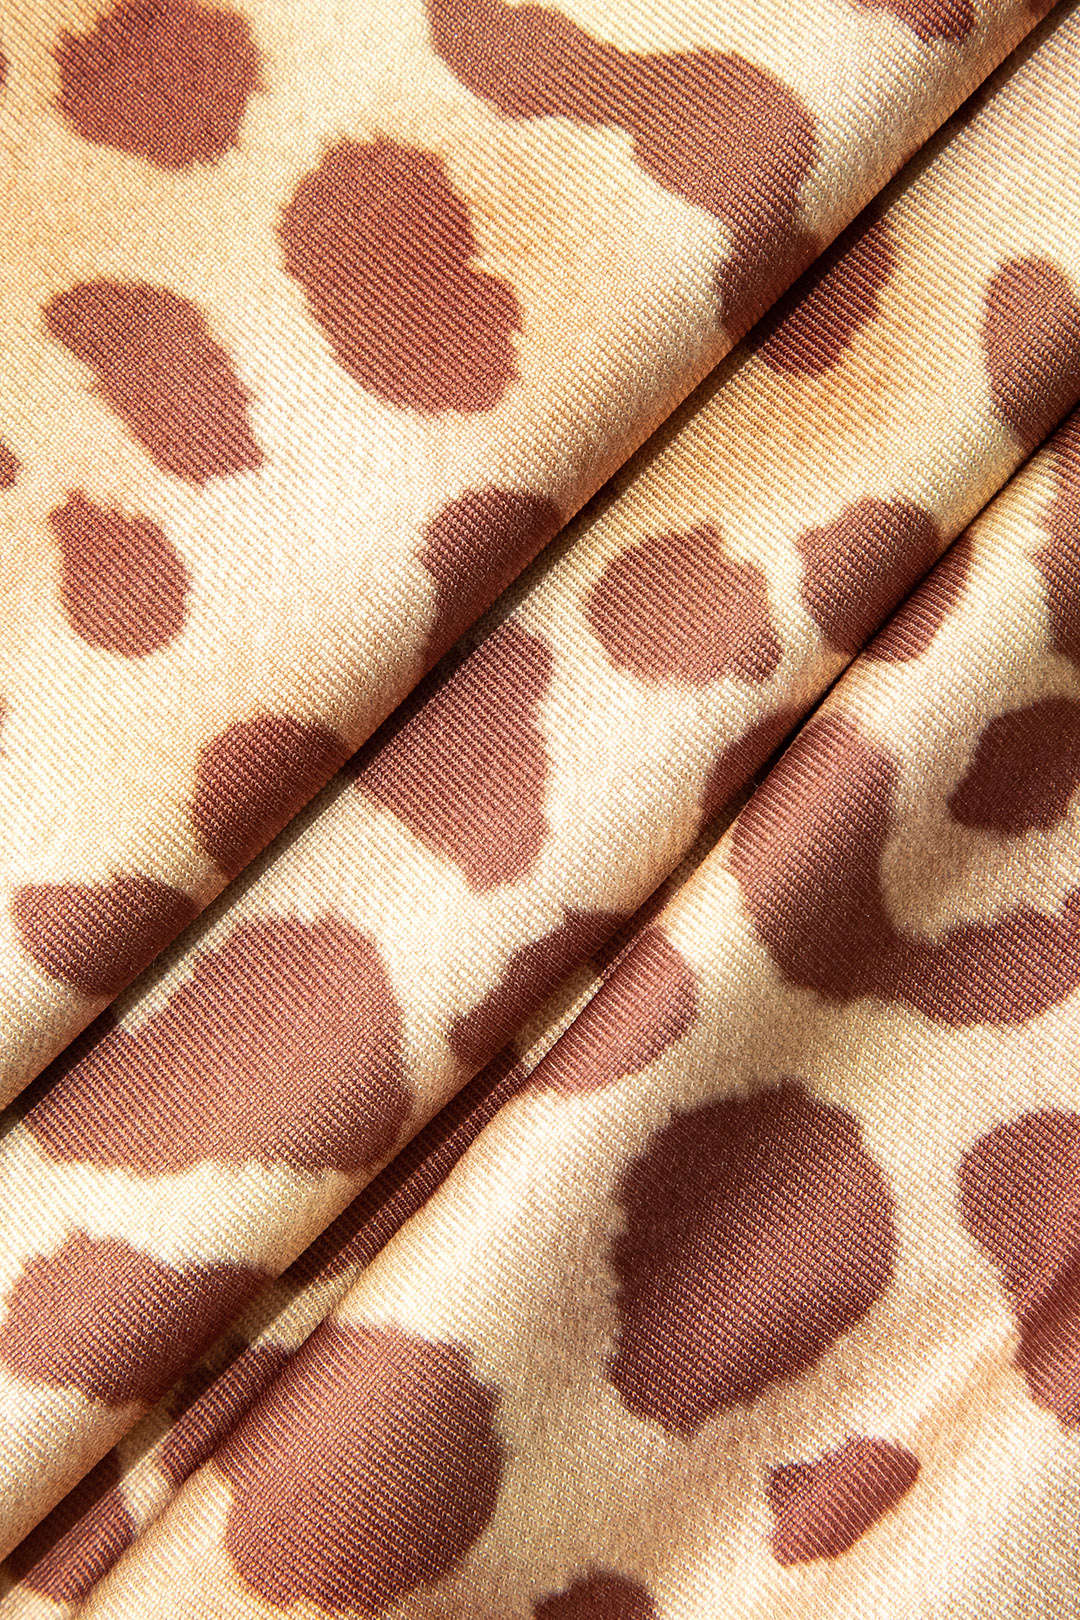 Leopard Print Backless Slip Midi Dress